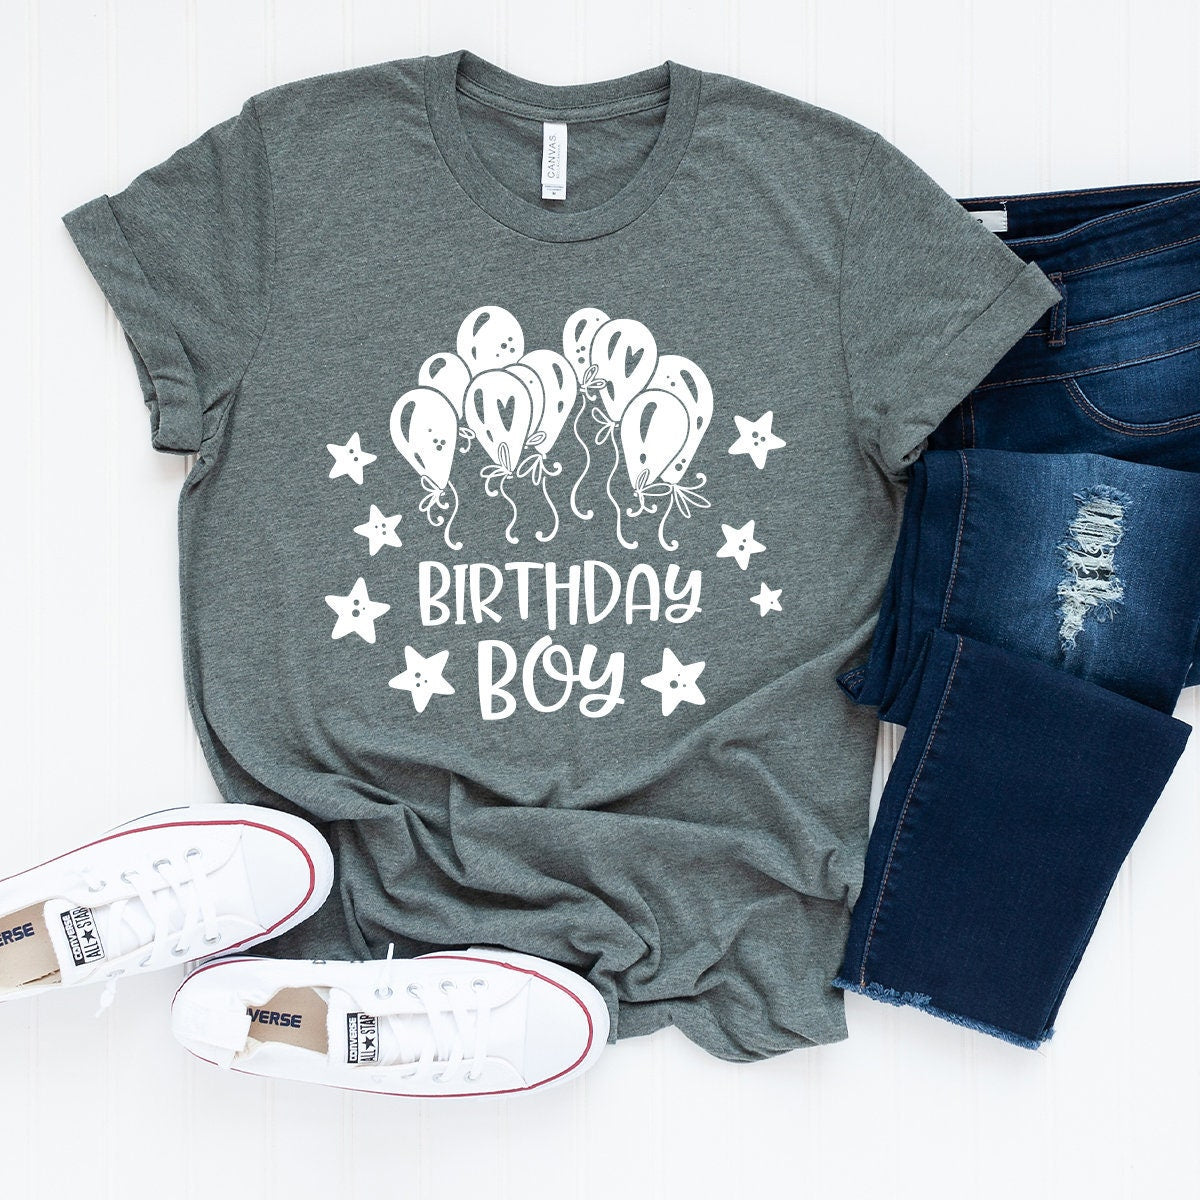 Boy Birthday T Shirt, Shirt For Boy, B-Day Shirt, B'Day Shirt, Toddler Boy Birthday Tee, Kids Birthday Shirt, Funny Boy Birthday Shirt - Fastdeliverytees.com